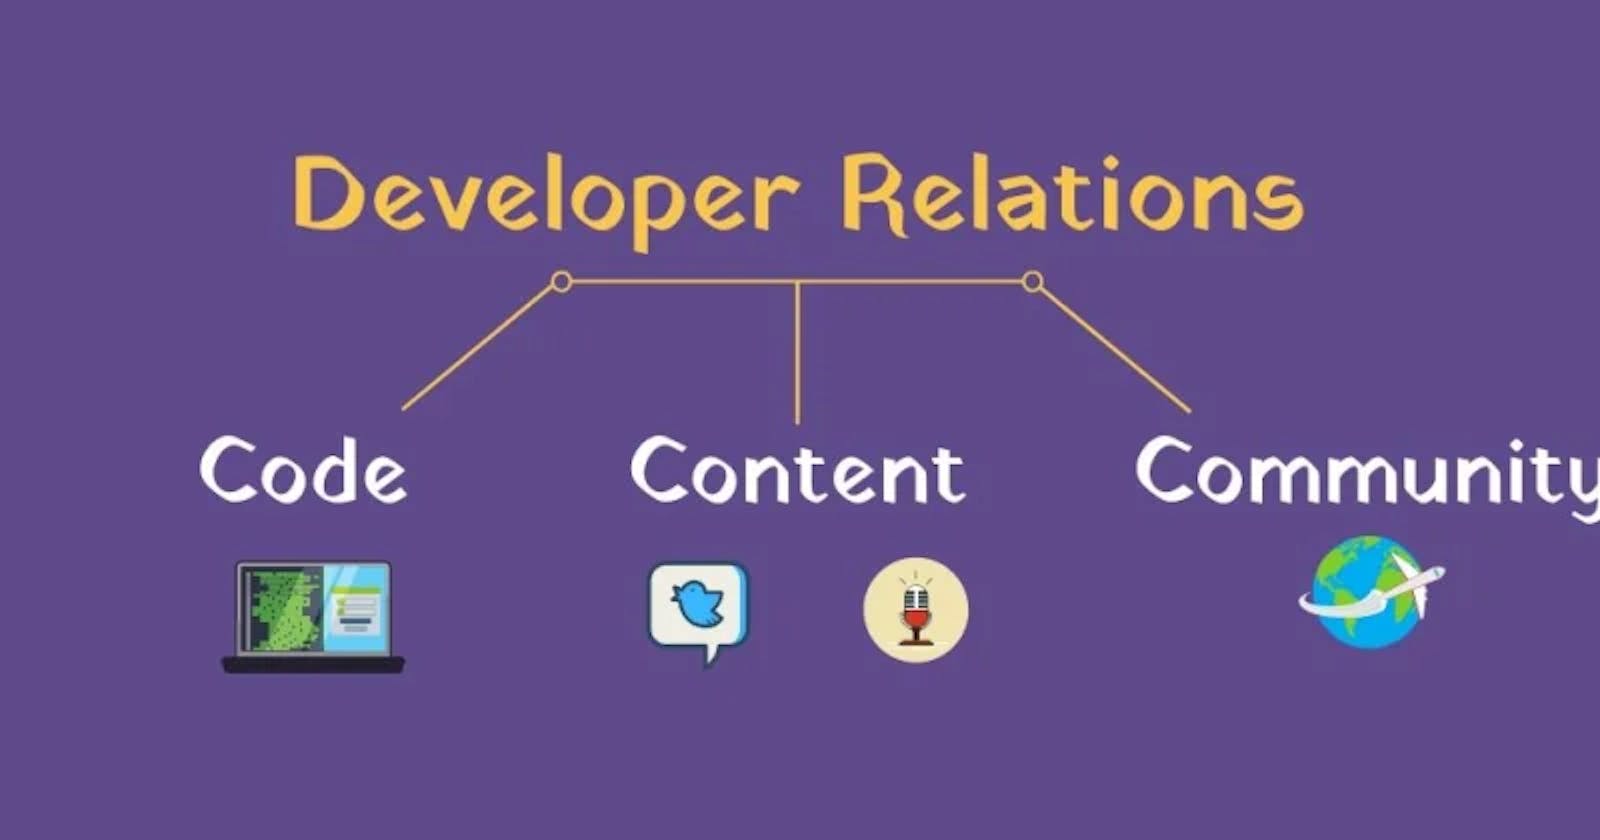 Understanding Developer Relations